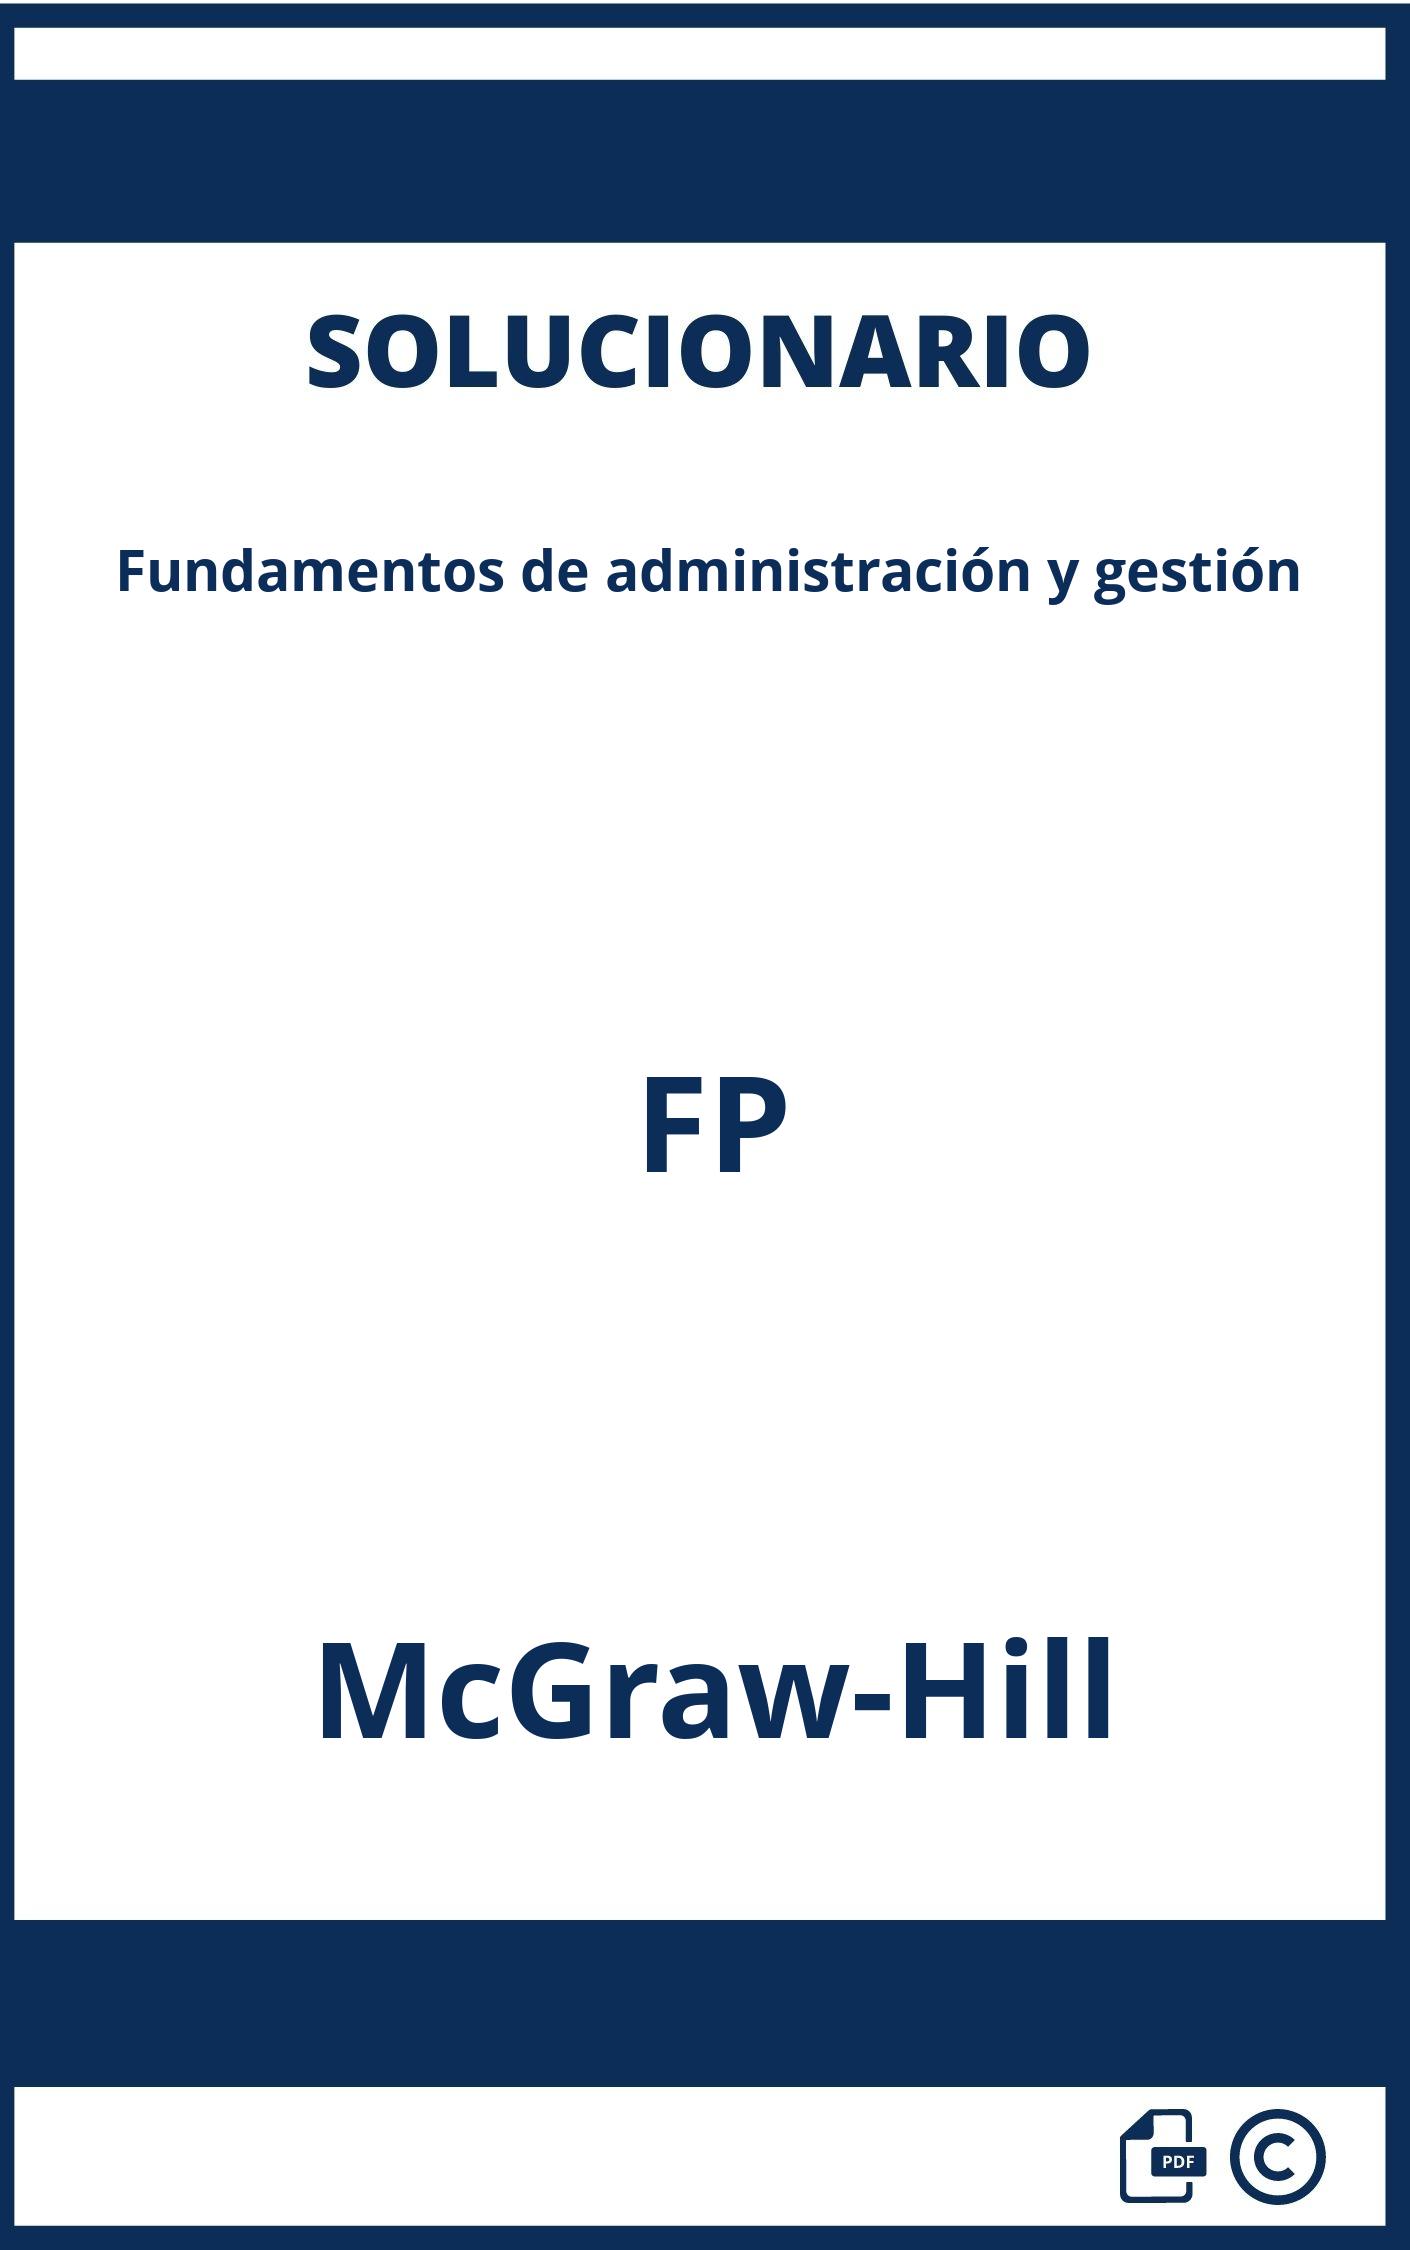 Solucionario Fundamentos de administración y gestión FP McGraw-Hill